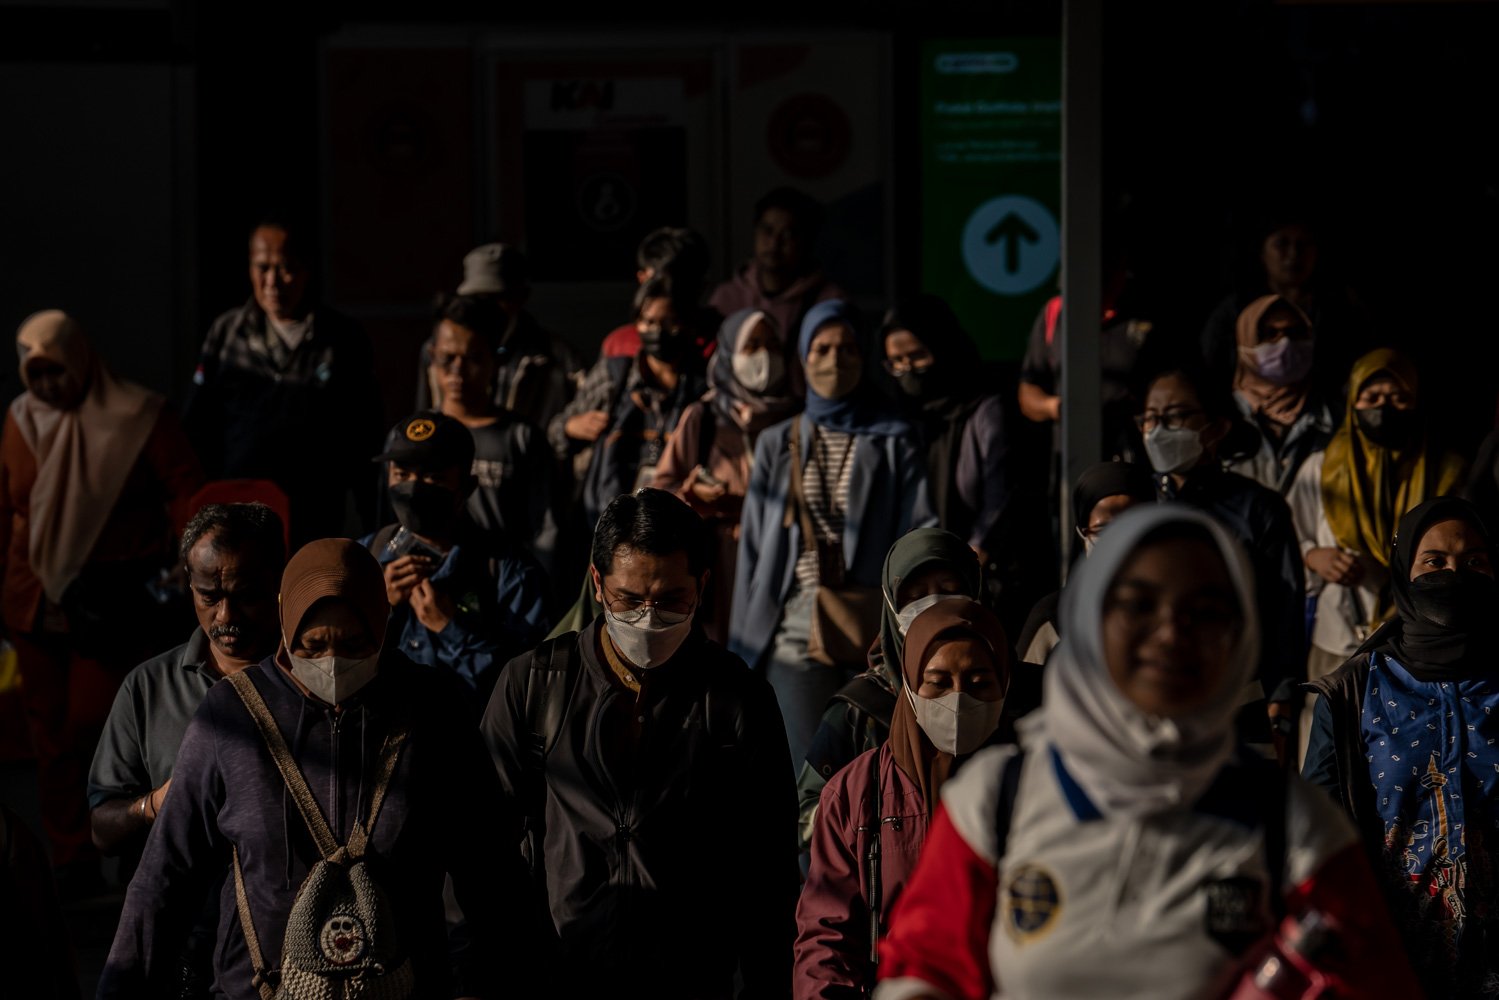 Pekerja melintas di kawasan Stasiun Tanah Abang, Jakarta, Kamis (24/8). Kebijakan bekerja dari rumah atau work from home alias WFH di Jakarta belum berdampak signifikan terhadap penurunan polusi. Berdasarkan data IQAir, polusi udara partikel mikro berukuran 2,5 nanometer atau PM 2,5 pukul 13.09 WIB di Jakarta enam kali di atas anjuran Organisasi Kesehatan Dunia atau WHO.\r\n\r\n